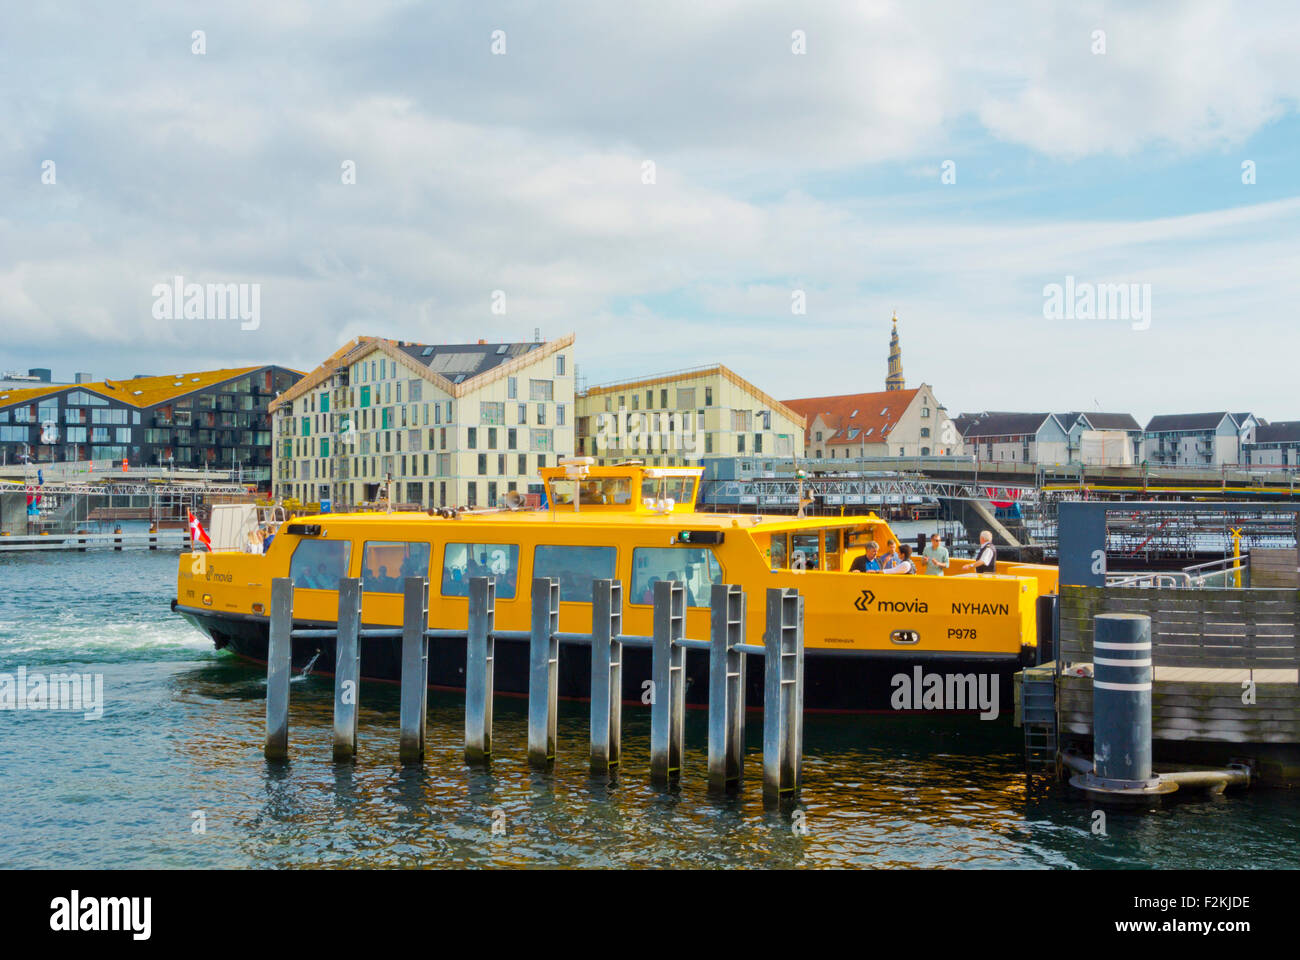 Havnebussen, transporte acuático, parada en Nyhavn, Copenhague, Dinamarca Foto de stock